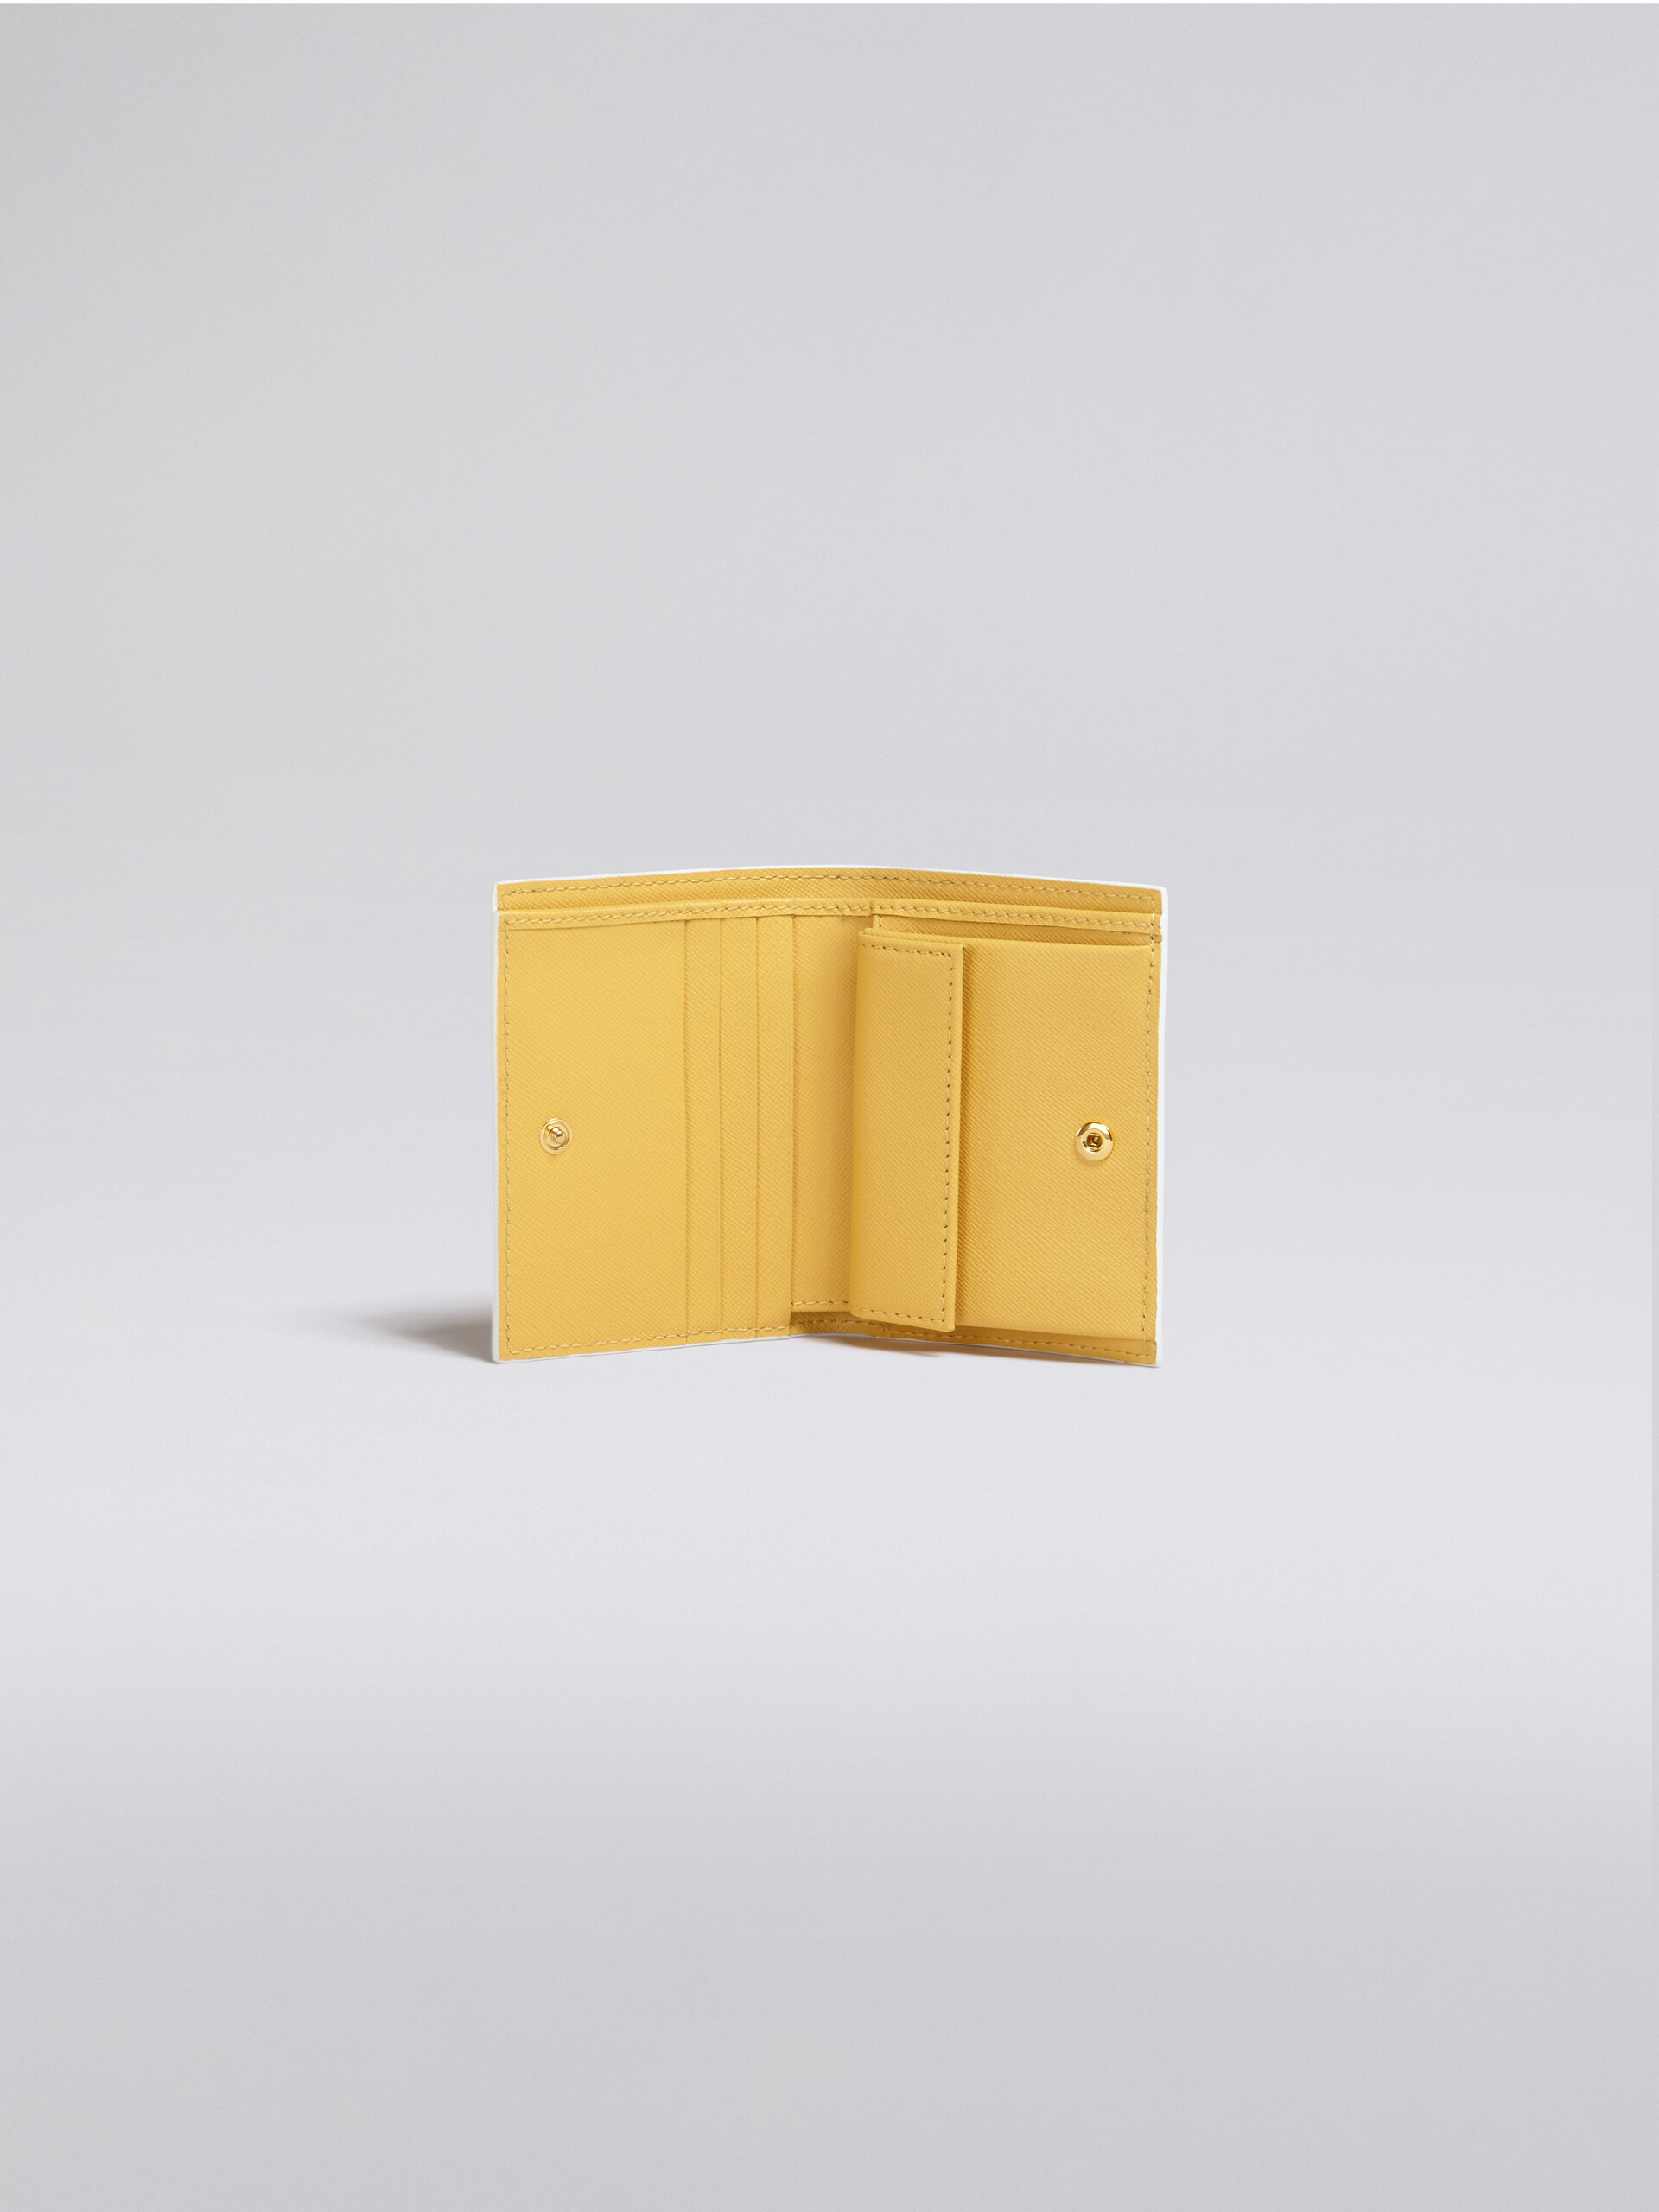 Portafoglio bi-fold in vitello saffiano monocolore giallo - Portafogli - Image 2